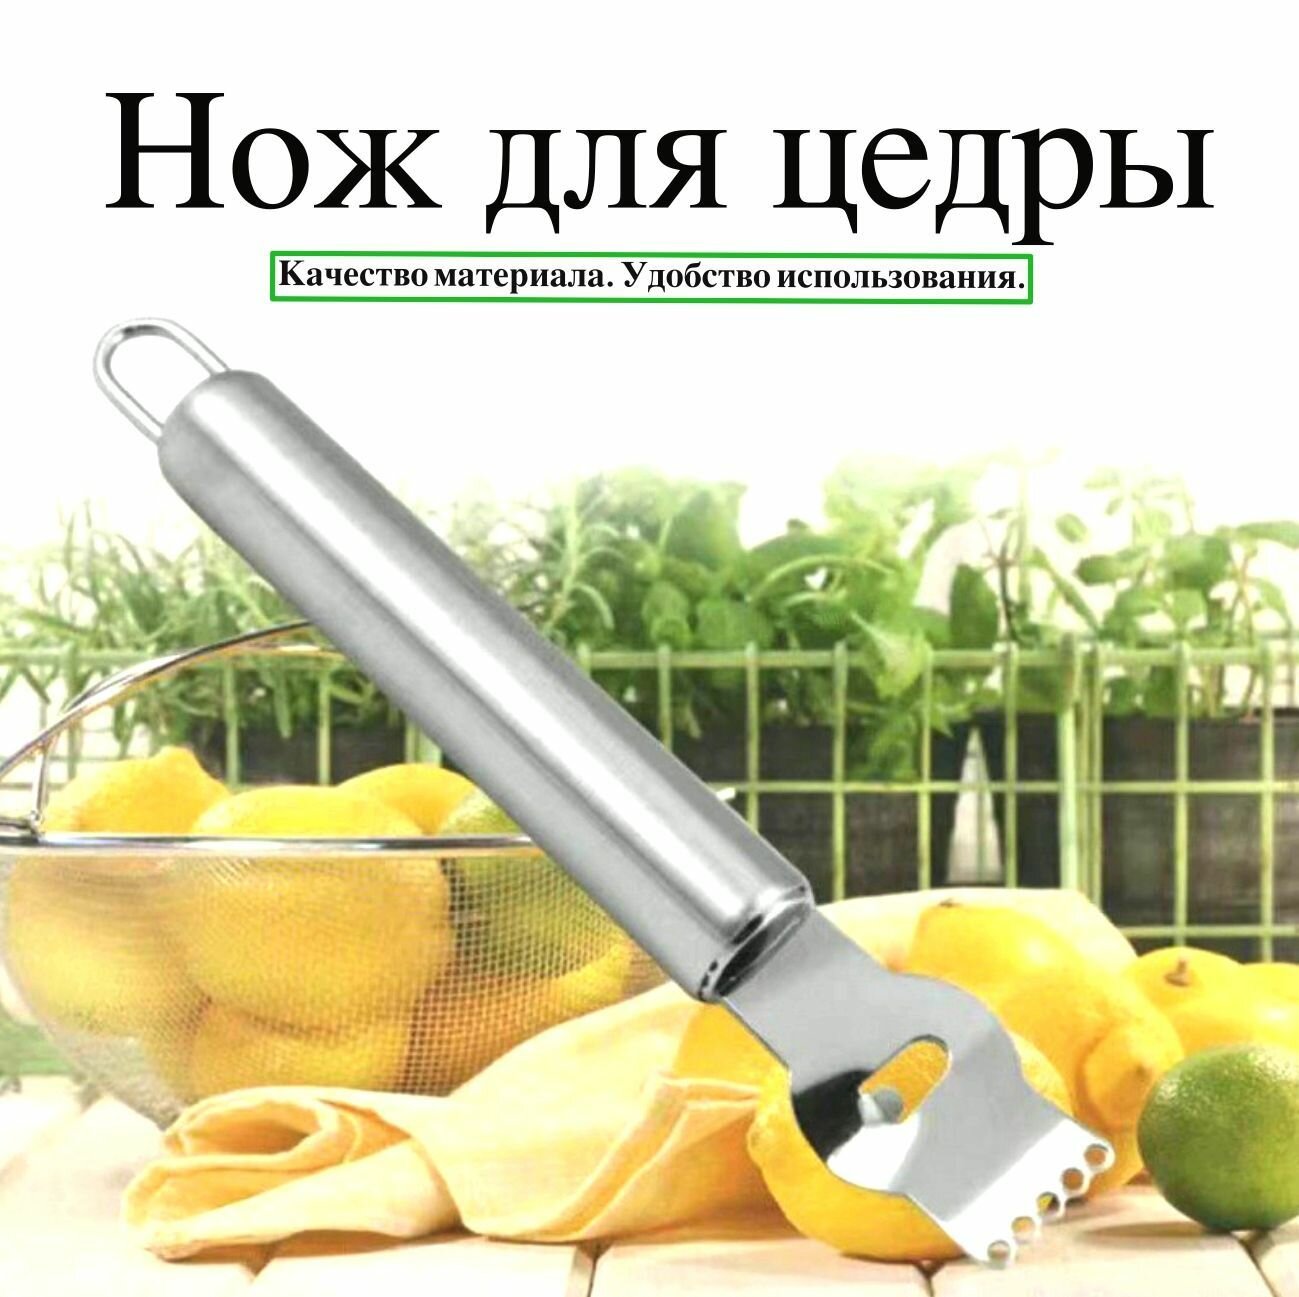 Нож для цедры Garmoni Rqe для легкой и аккуратной сборки цедры фигурной вырезки и декора цитрусовых лимонов и апельсинов из нержавеющей стали.